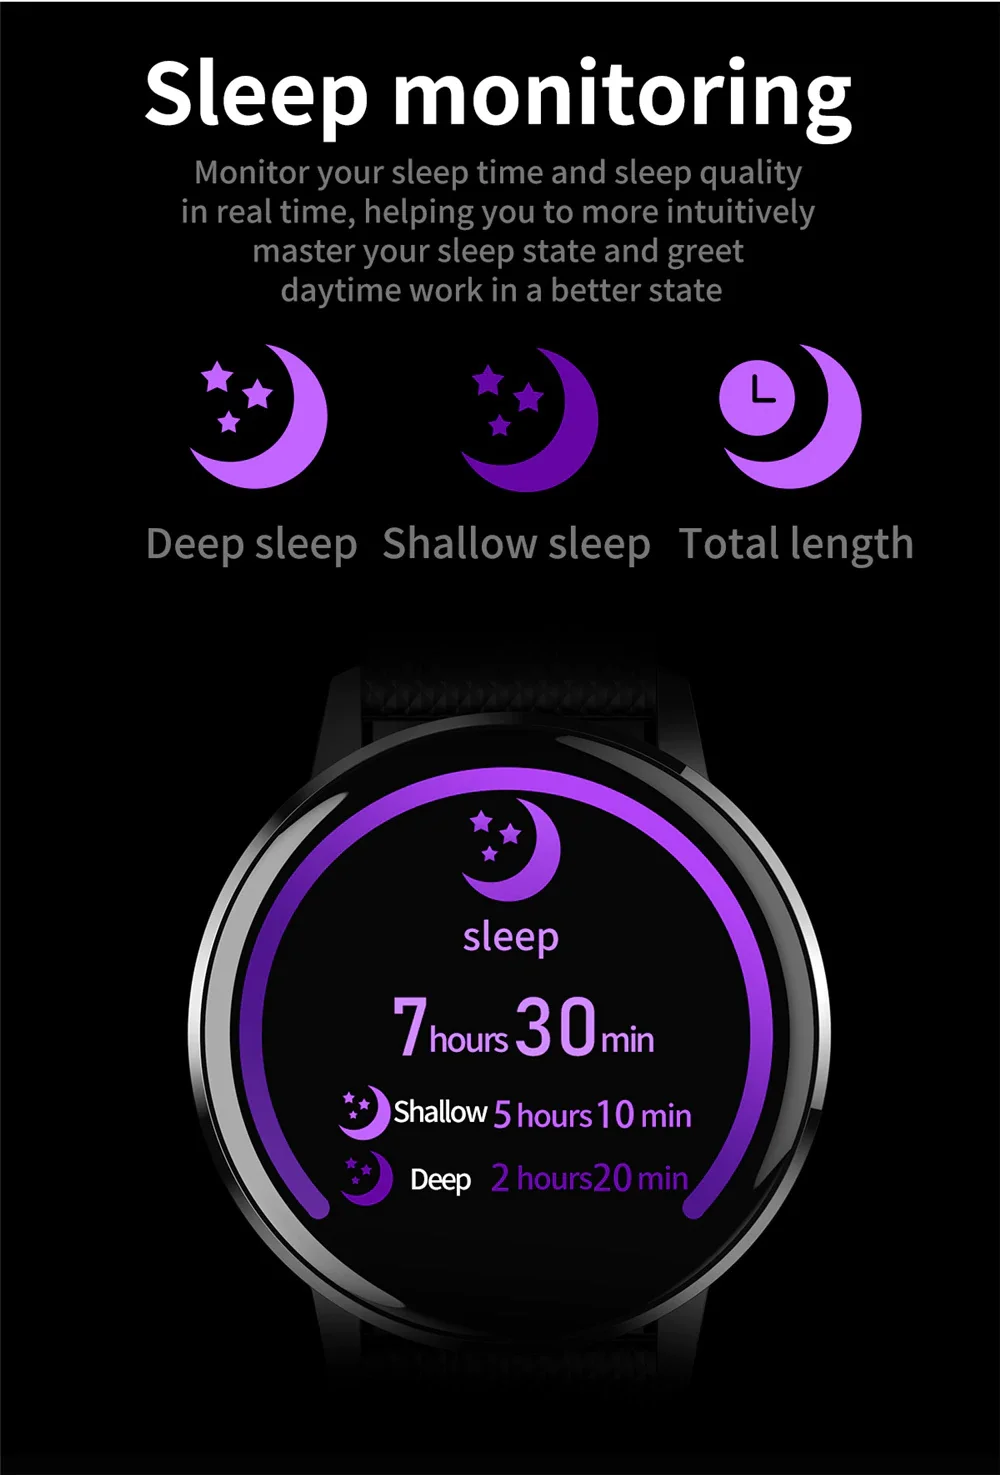 CYUC T4 IP67 водонепроницаемые женские cмарт часы мужчина воспроизводить музыку сердечного ритма трекер артериального давления монитор мужские спортивные умные часы фитнес-трекер для Android IOS